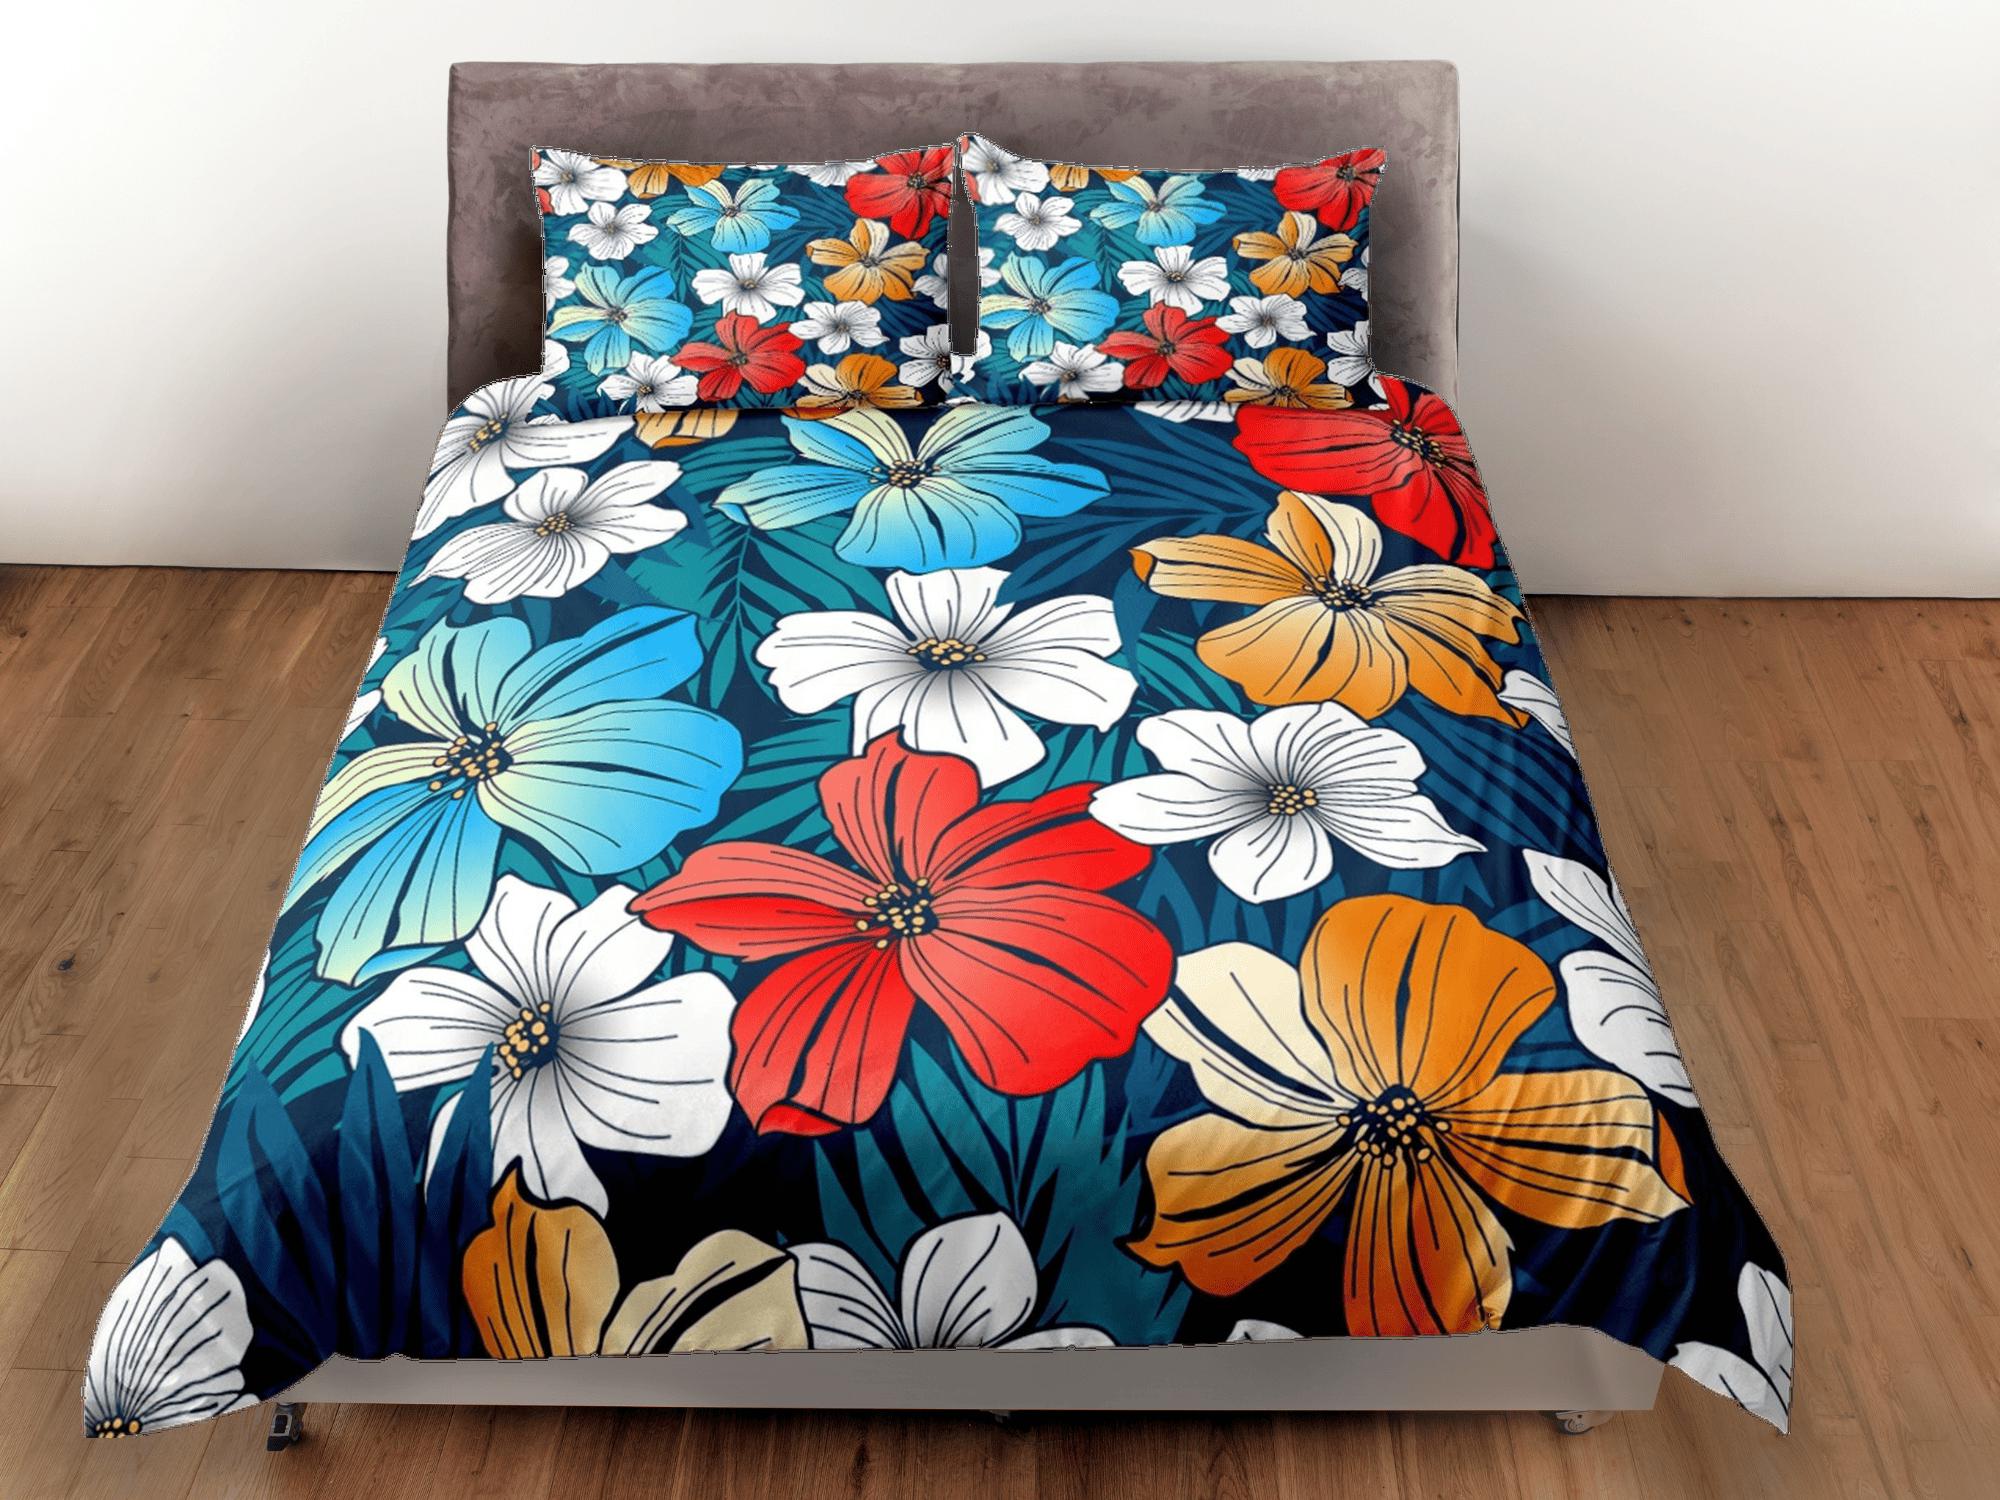 daintyduvet Hibiscus floral bedding blue, luxury duvet cover queen, king, boho duvet, designer bedding, aesthetic bedding, maximalist full size bedding